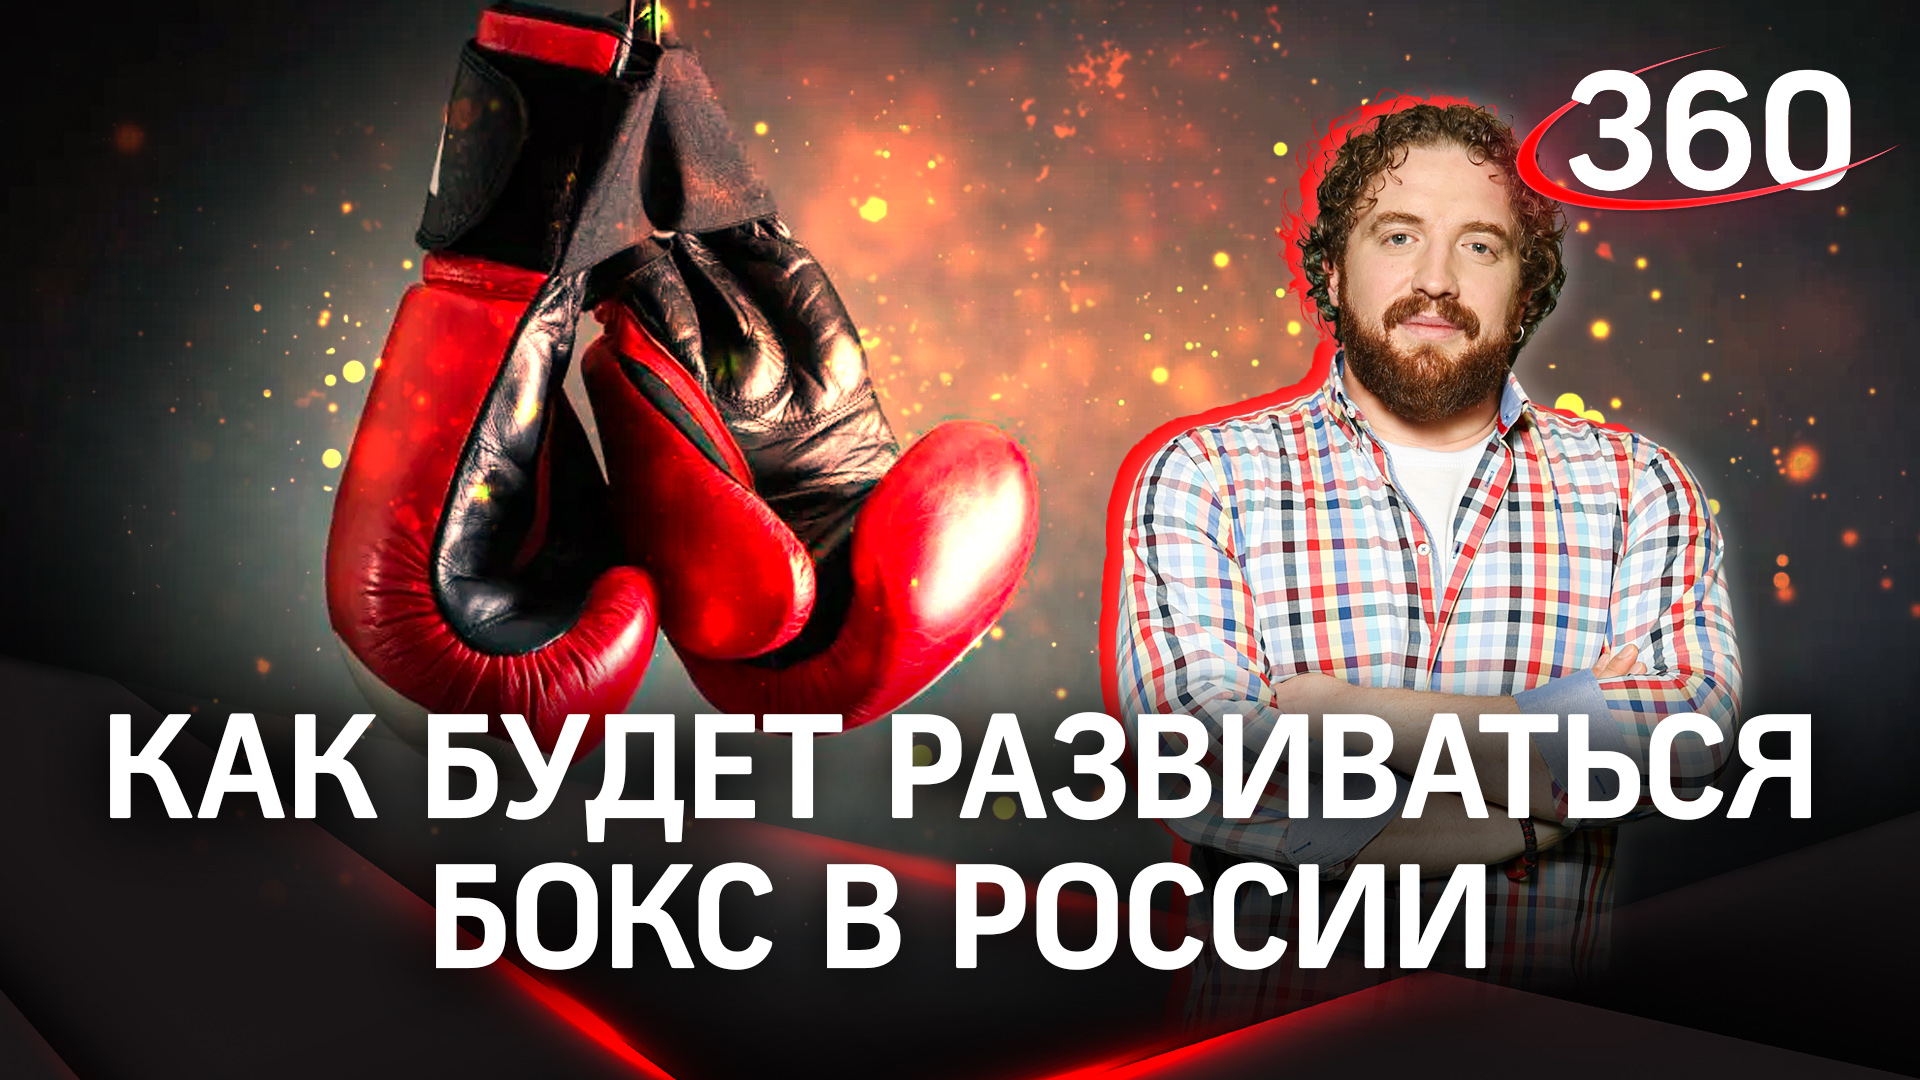 Серпухов принял боксеров со всей России на федеральном форуме